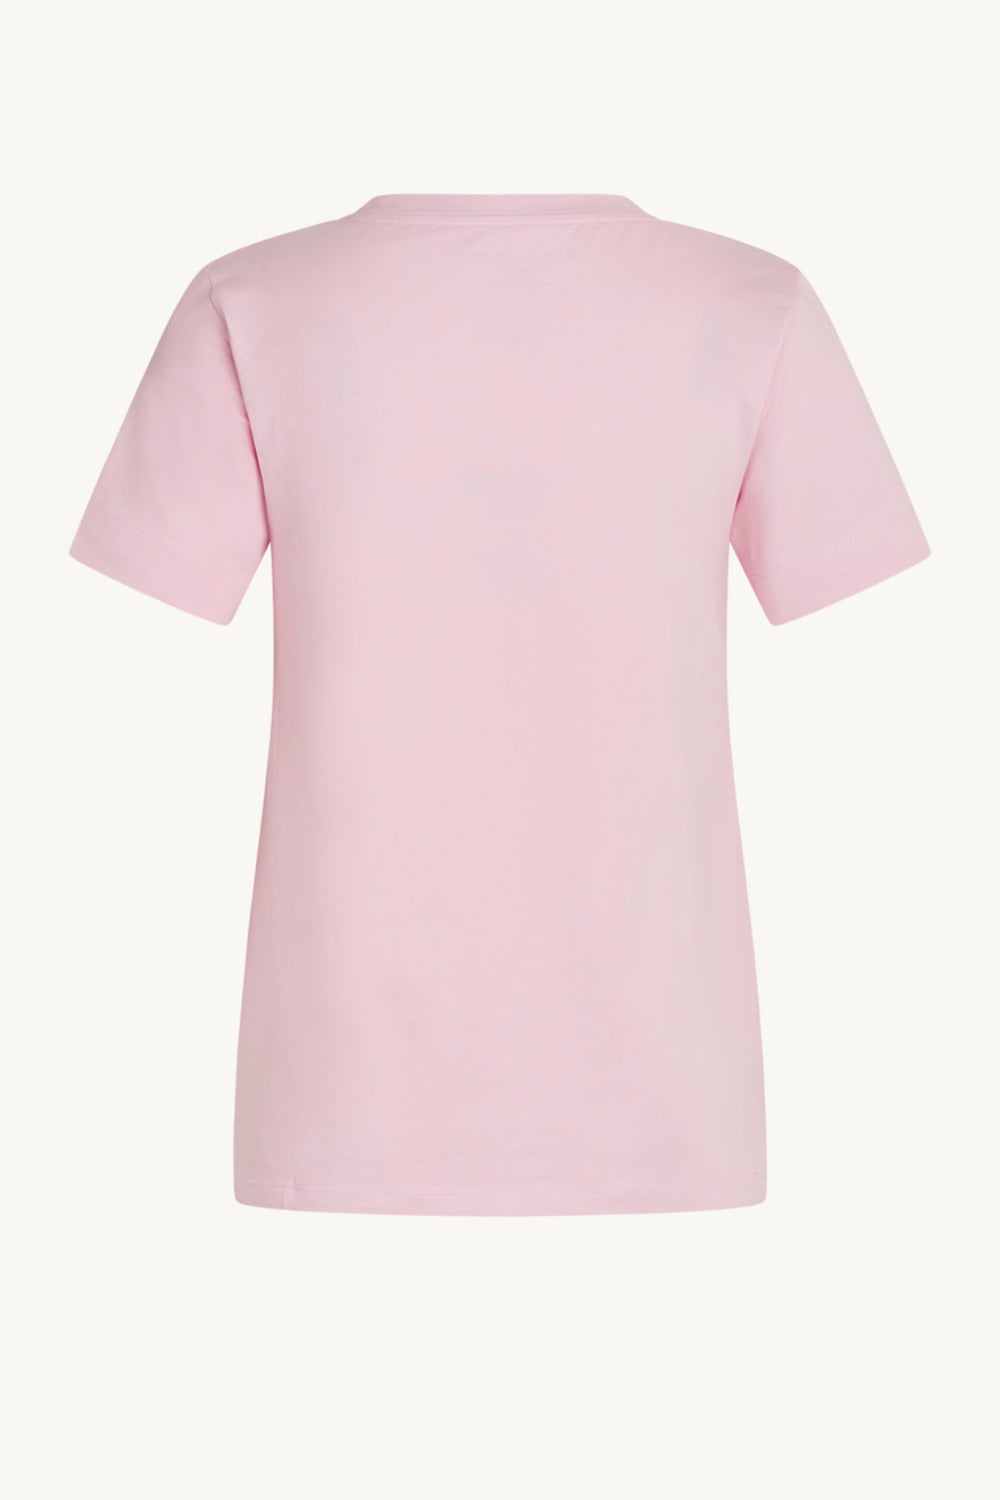 Adrienne-Cw T-Shirt Pink Lady | Skjorter og bluser | Smuk - Dameklær på nett